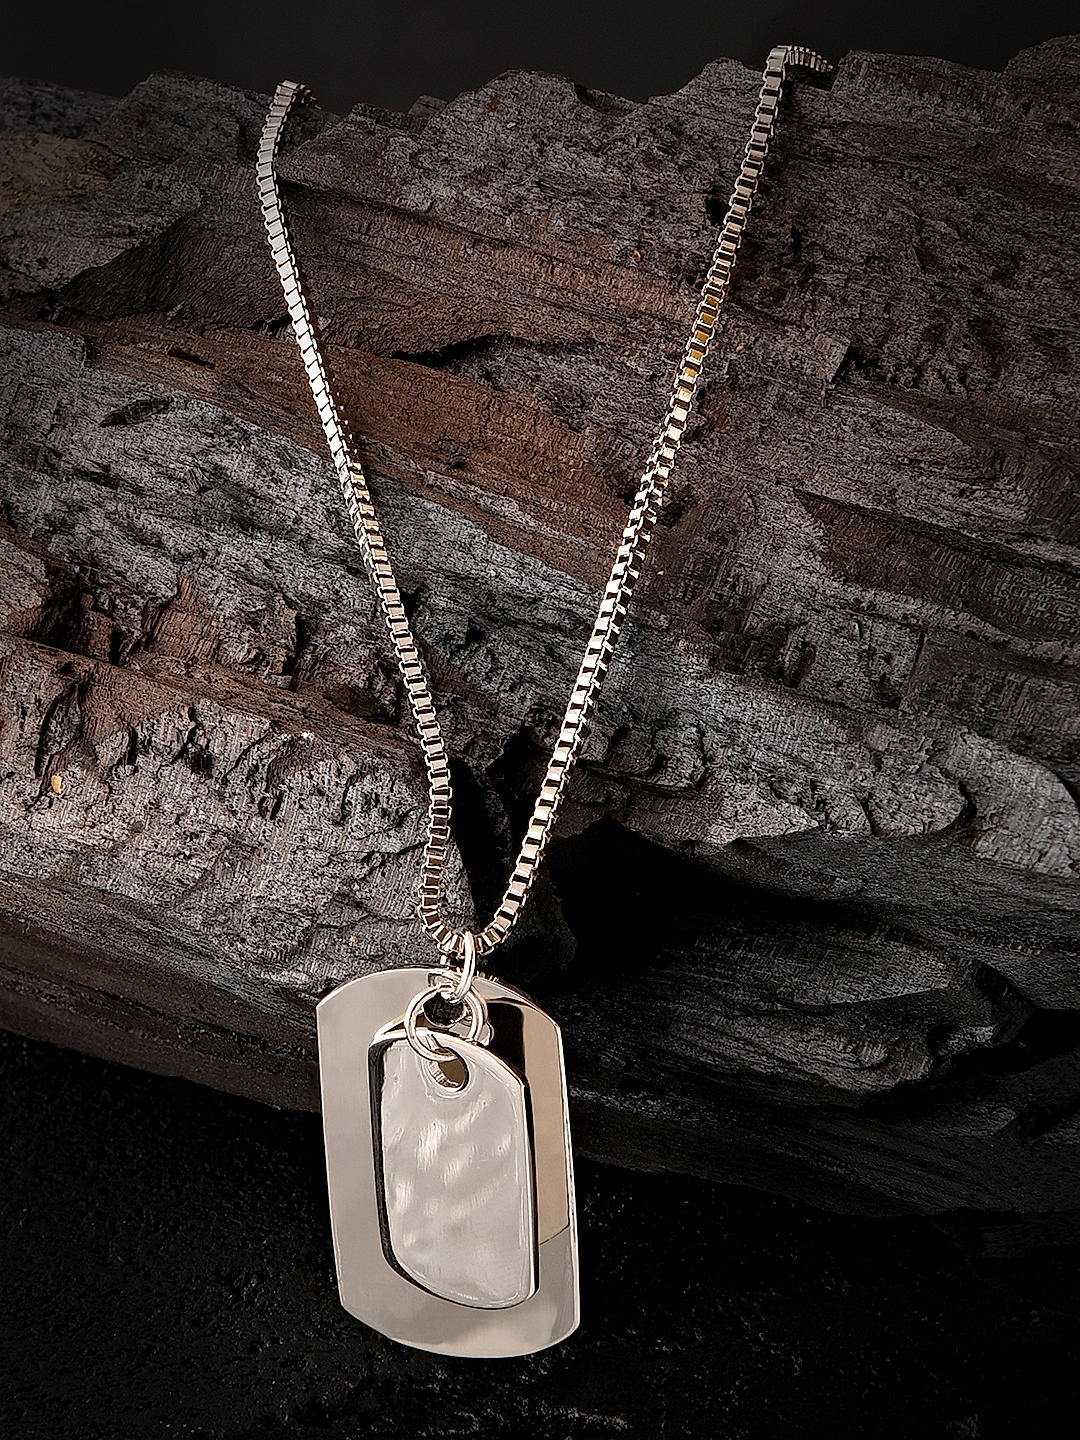 Silver necklace - tag - Ref No AP533-3909 / Apart